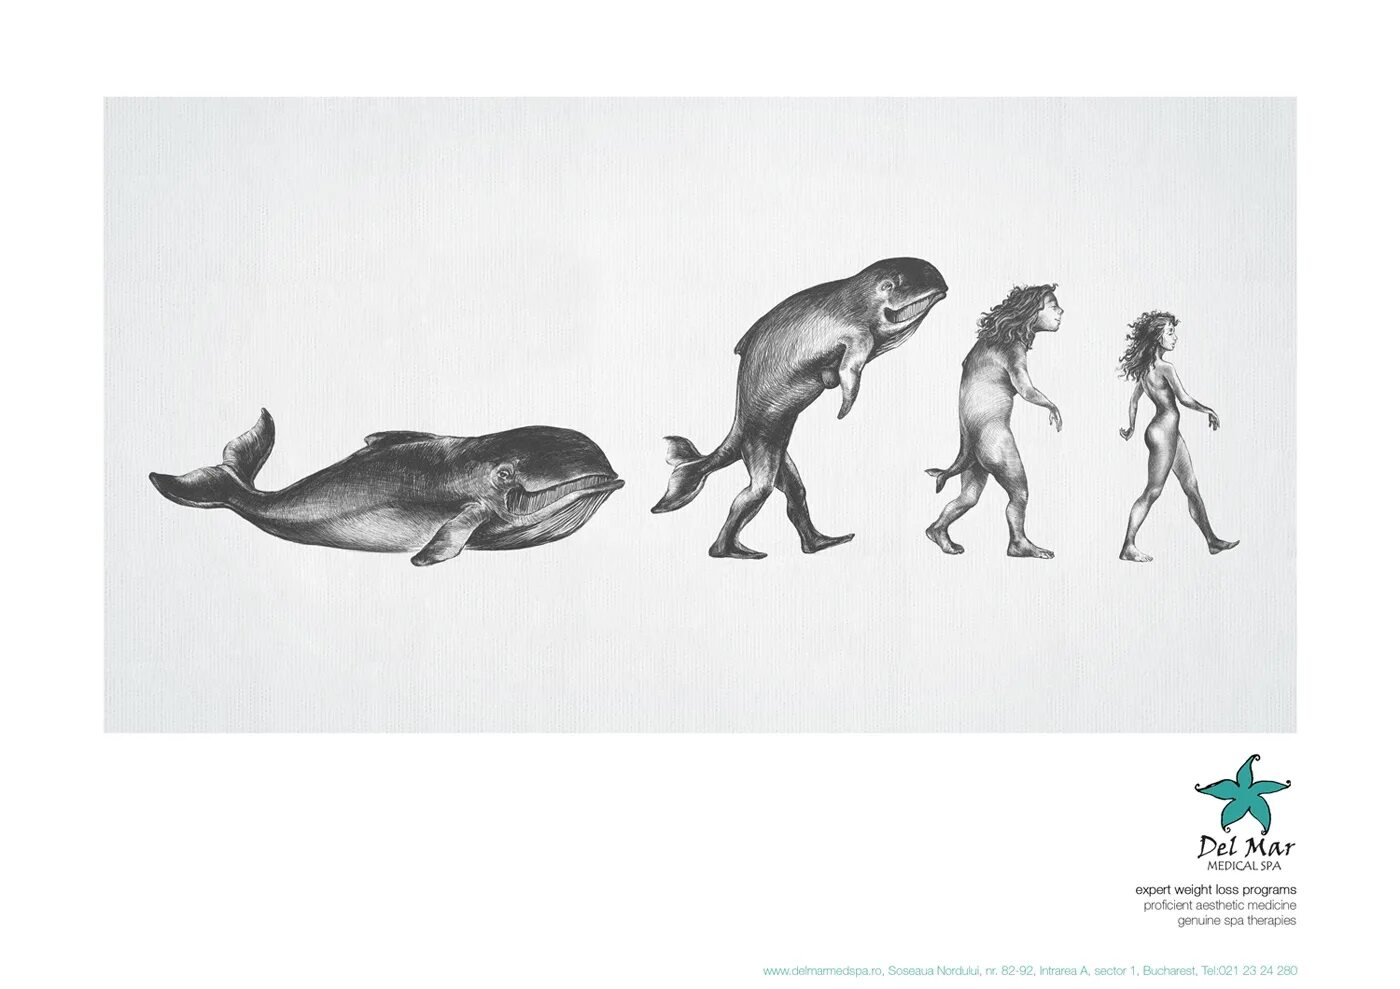 Жизнь в воде эволюция. Теория эволюции Дарвина. Человек произошел от рыбы. Эволюция иллюстрация. Эволюция от рыбы.